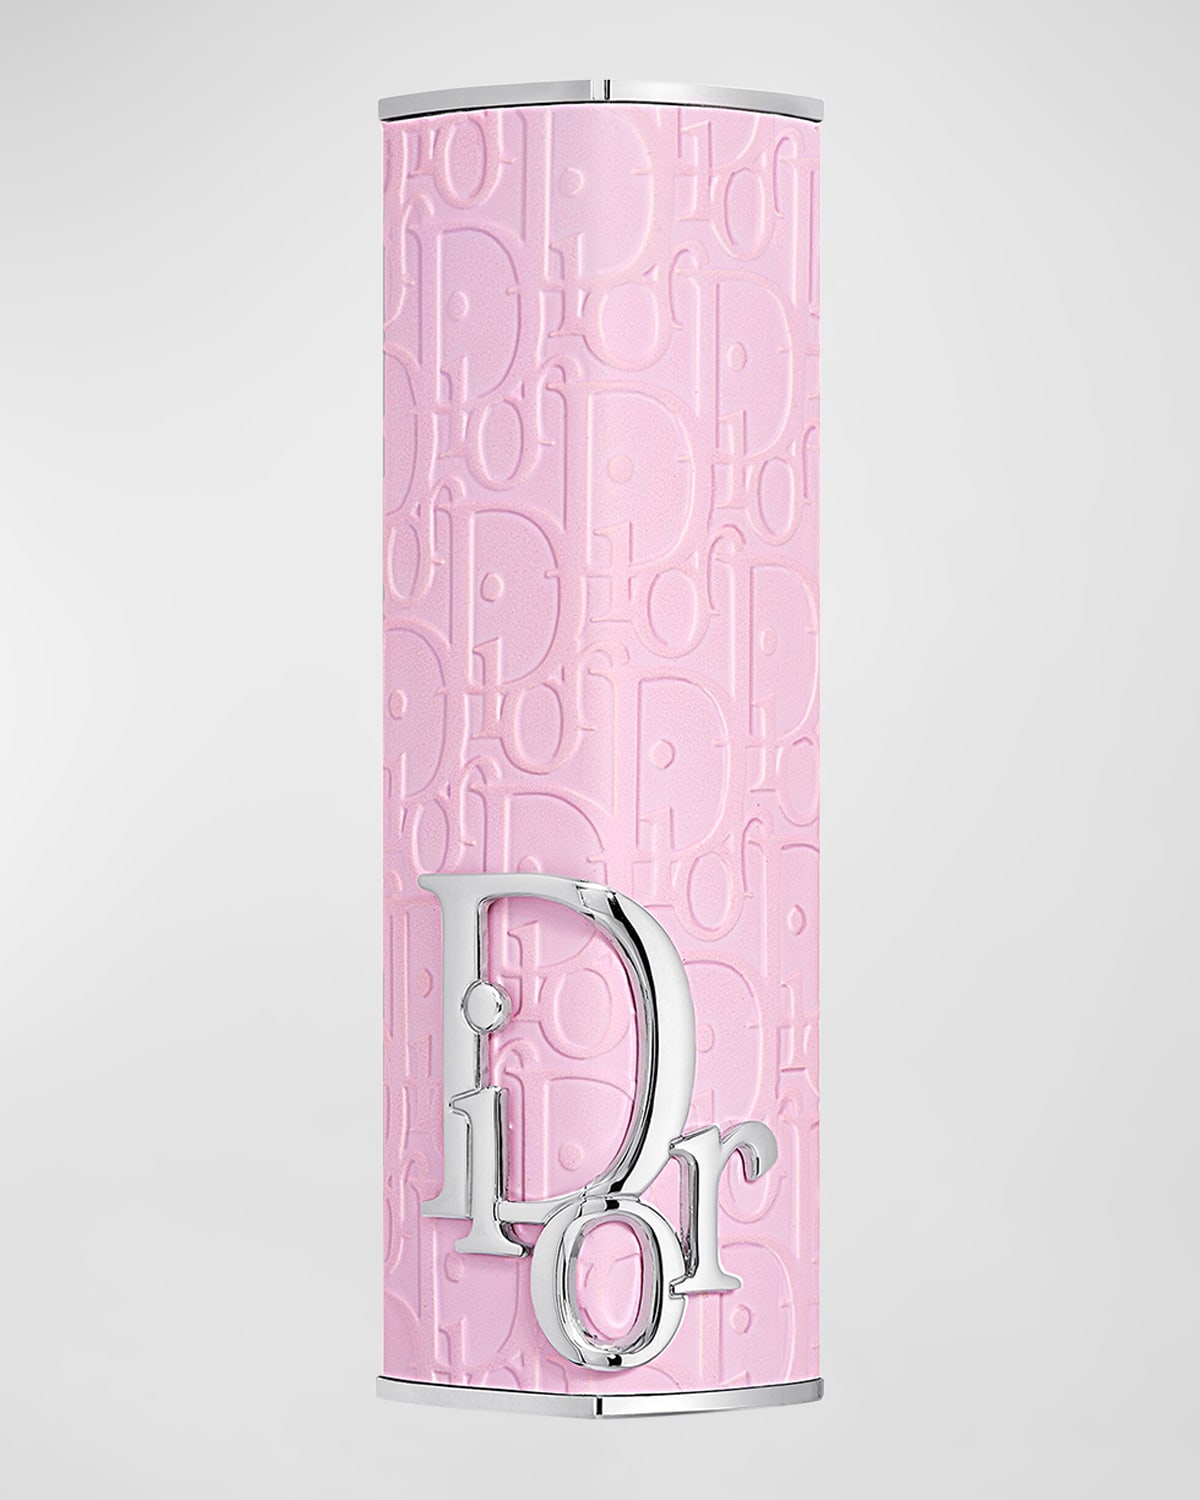 Dior Addict Refillable Shine Lipstick - Couture Case In Rosemania - Limited Edition